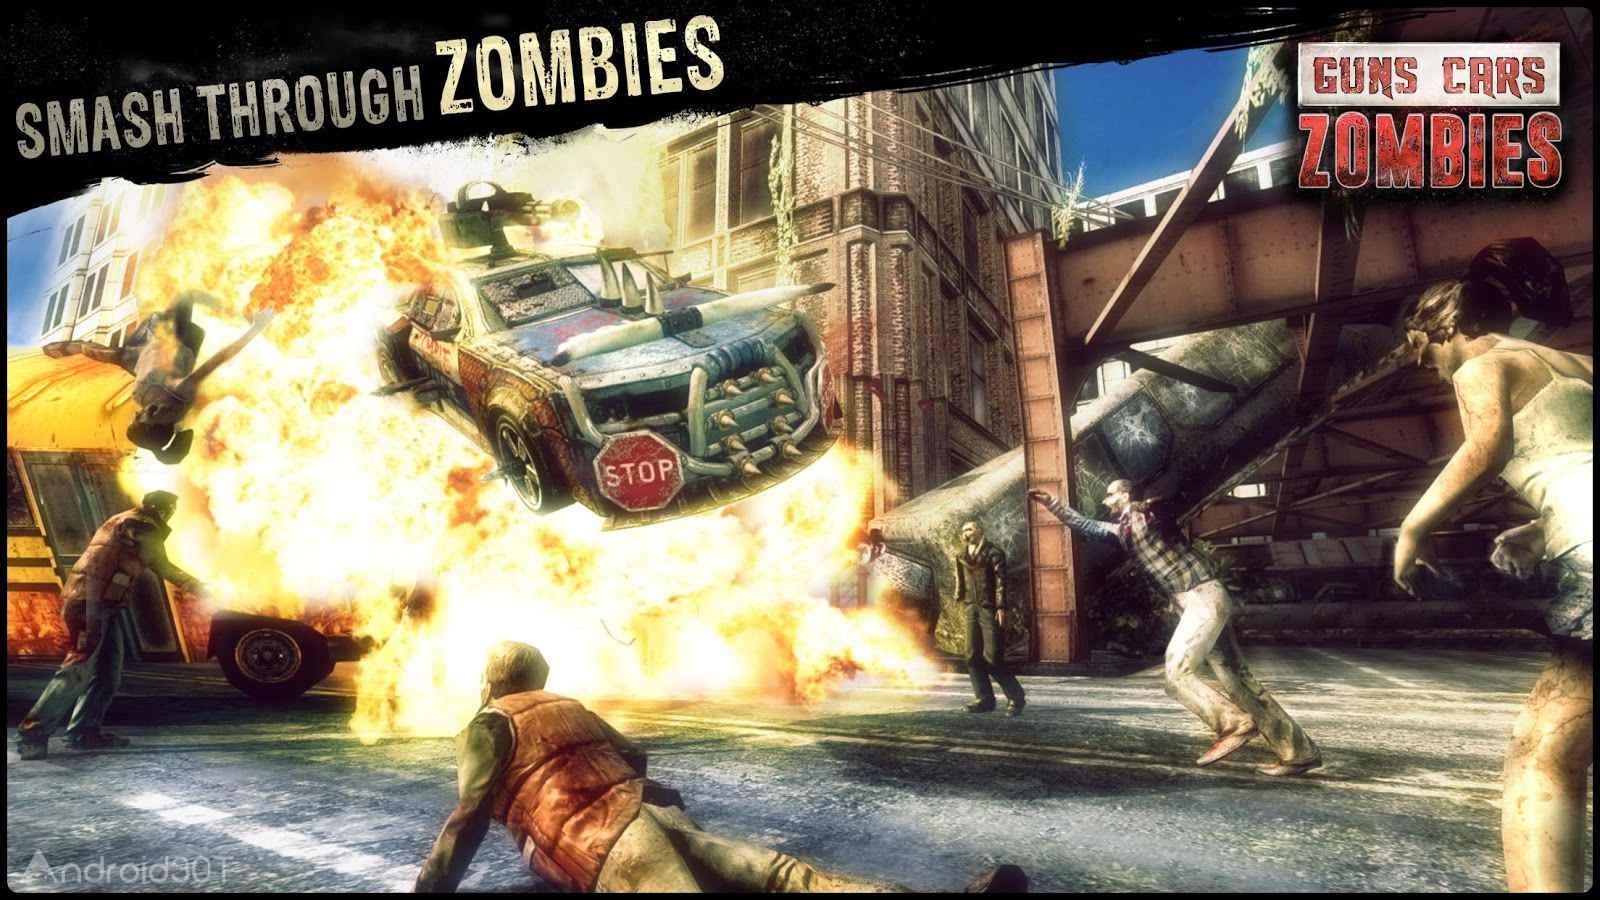 دانلود Guns, Cars, Zombies 3.2.6 – بازی نابود کردن زامبی ها با ماشین جنگی اندروید